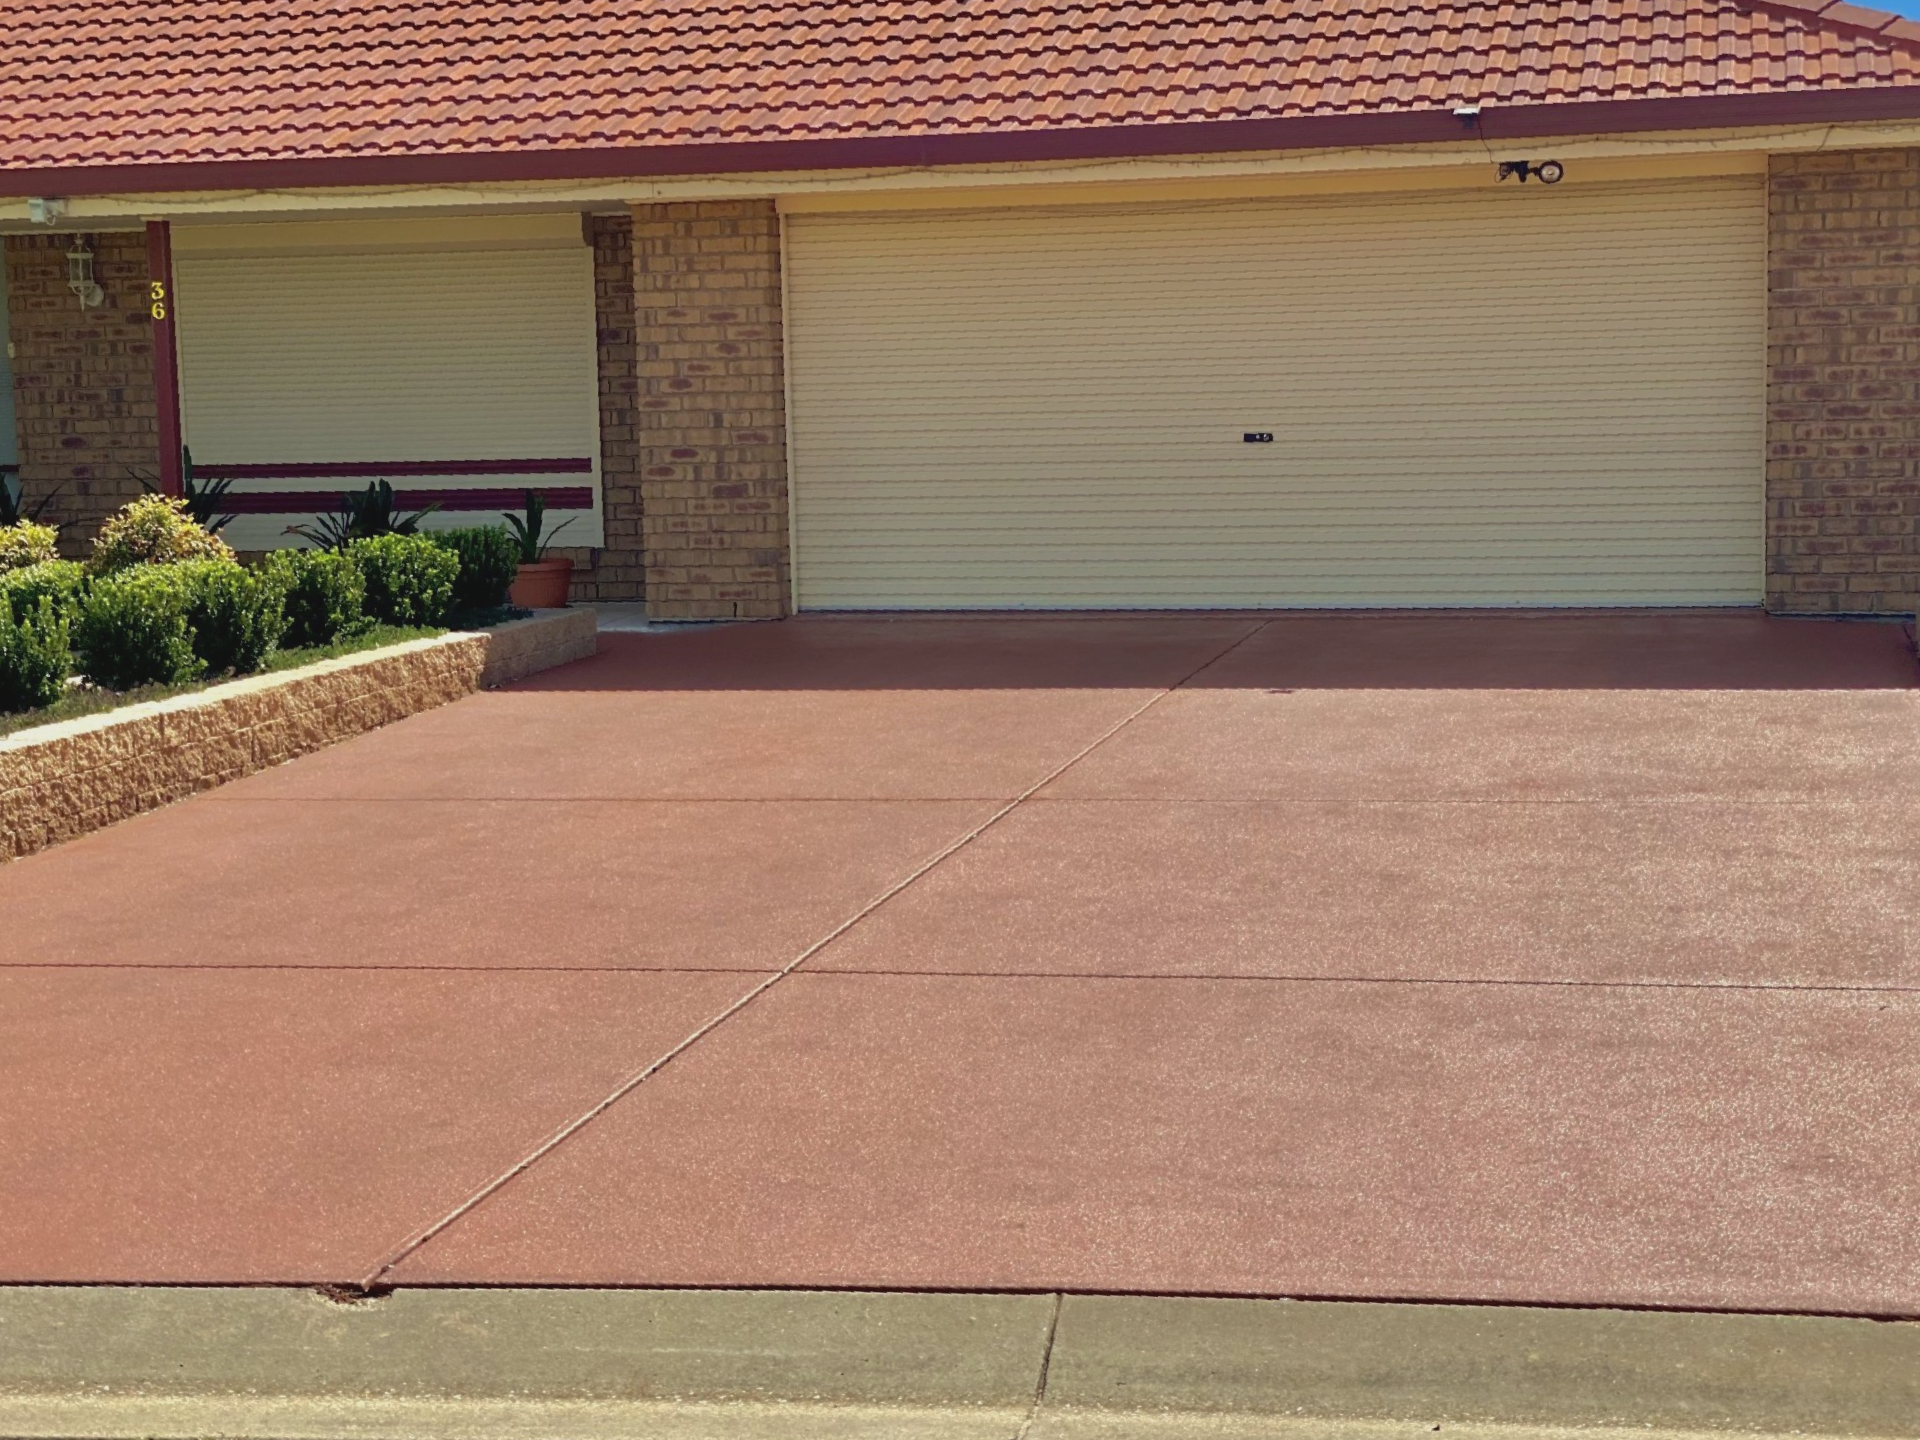 CONCRETE SEALING: 2-Part Concrete Colour Sealing Systems Outperform Concrete Paint On Driveways